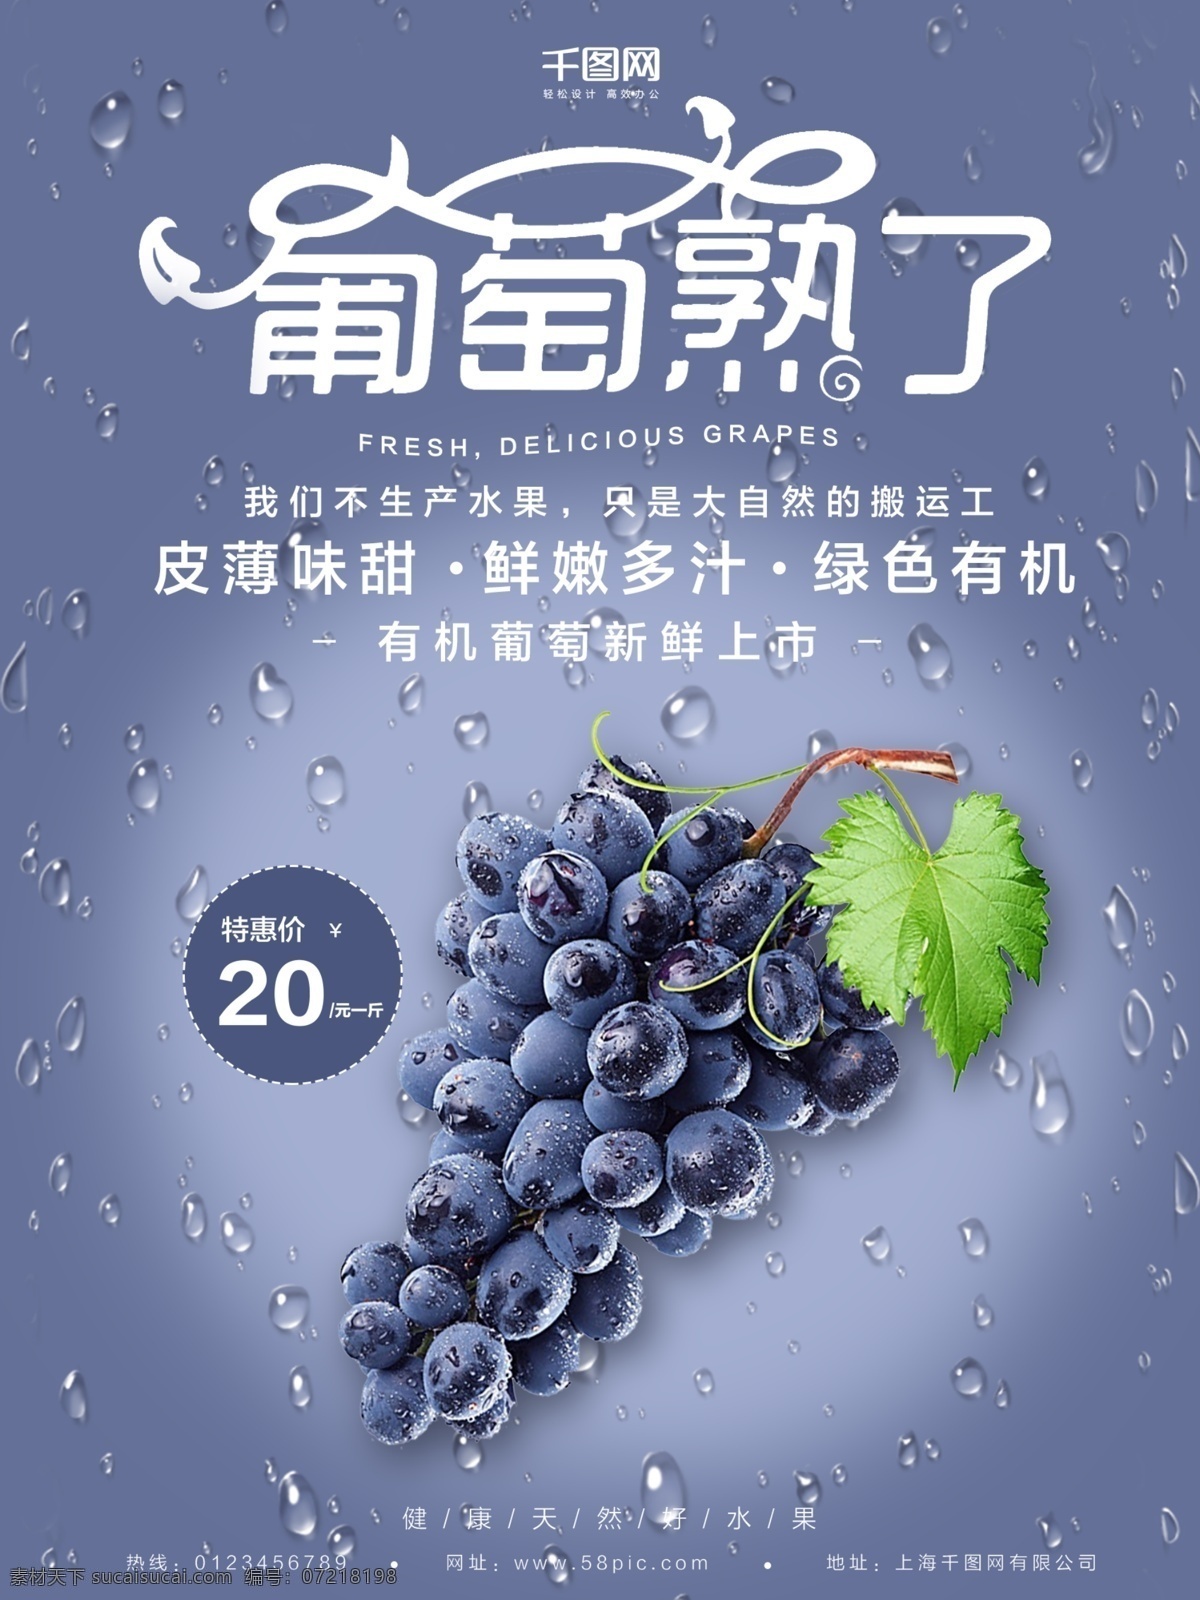 紫色 清新 葡萄 水果 创意 简约 商业 葡萄海报 分销商 宣传海报 农产品 水果广告 葡萄宣传海报 促销海报 海报素材 超市促销 生鲜